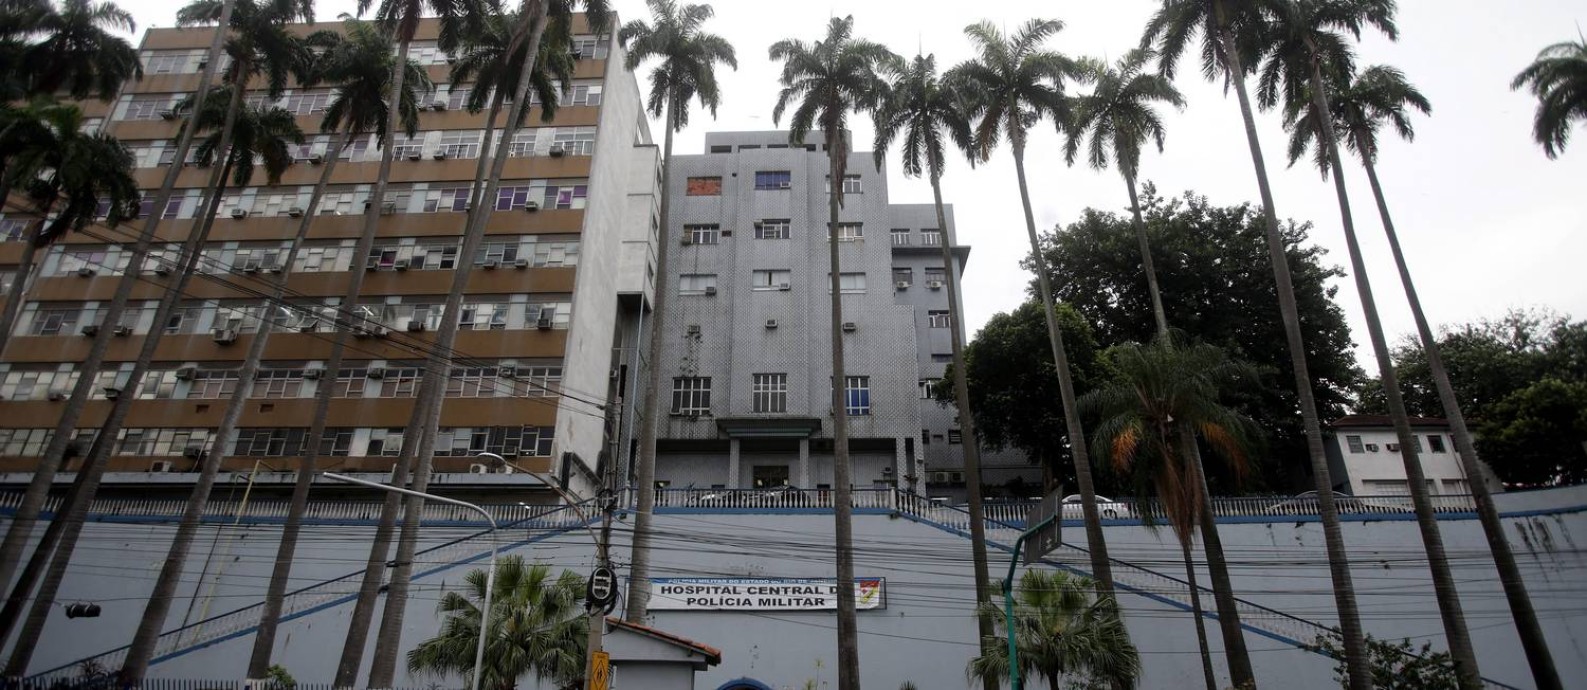 Fachada do Hospital Central da PM (11/09/2015) Foto: Rafael Moraes/Agência O GLOBO